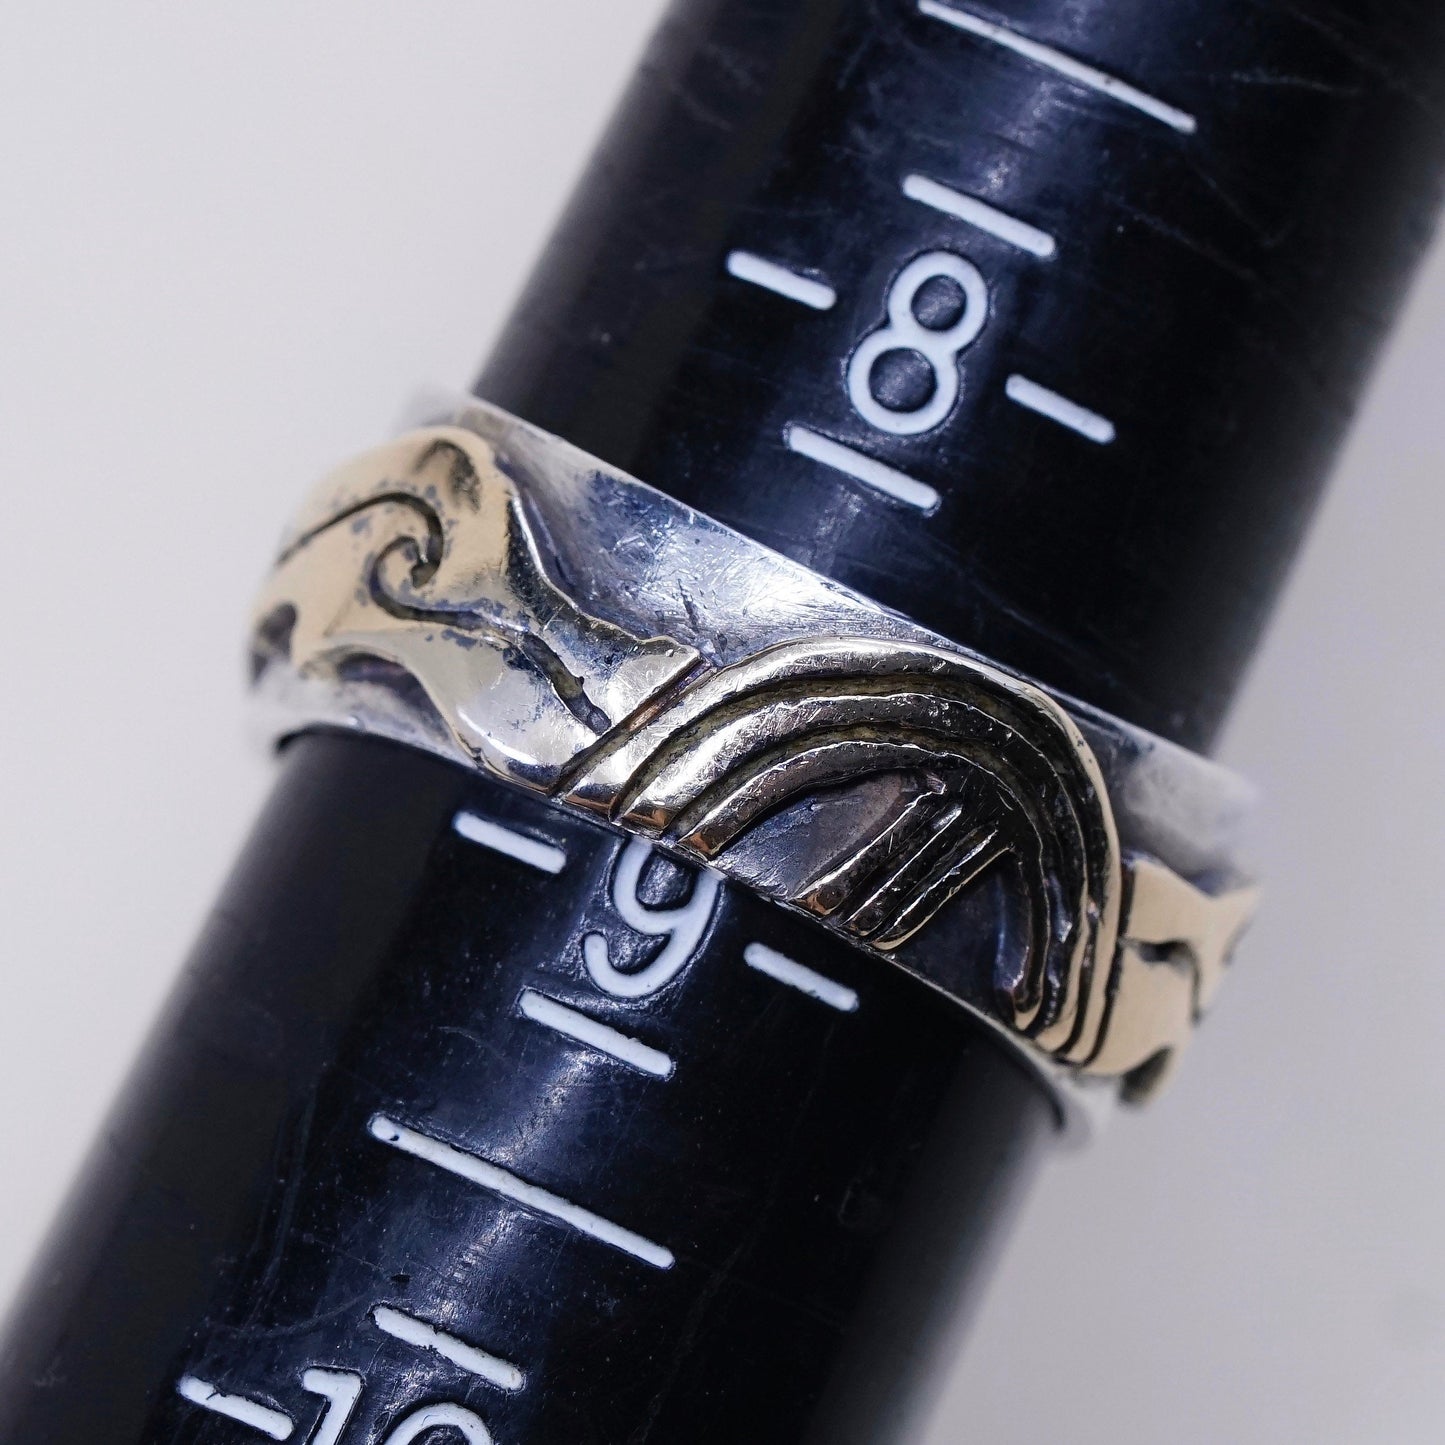 sz 8.75, vtg mexico 14K w/ sterling 925 silver handmade storyteller ring band